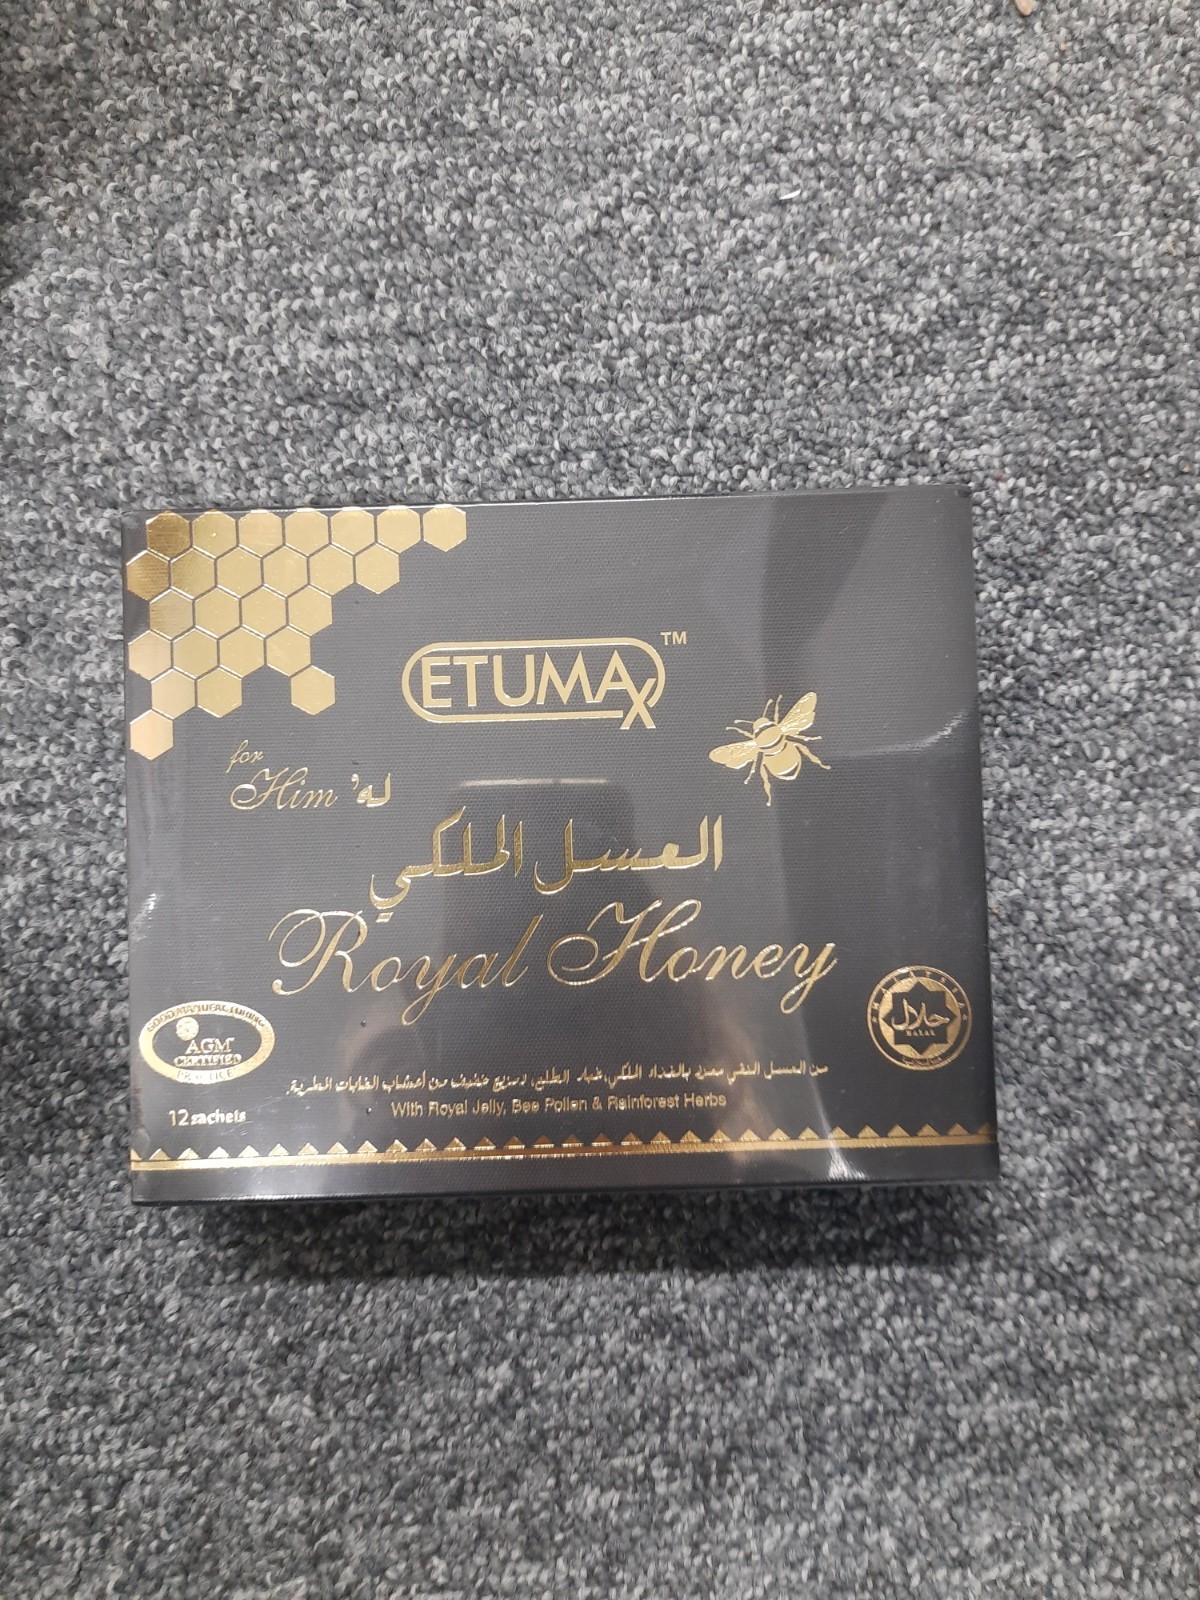 Billede af det ulovlige produkt: Etumax Royal Honey for Him